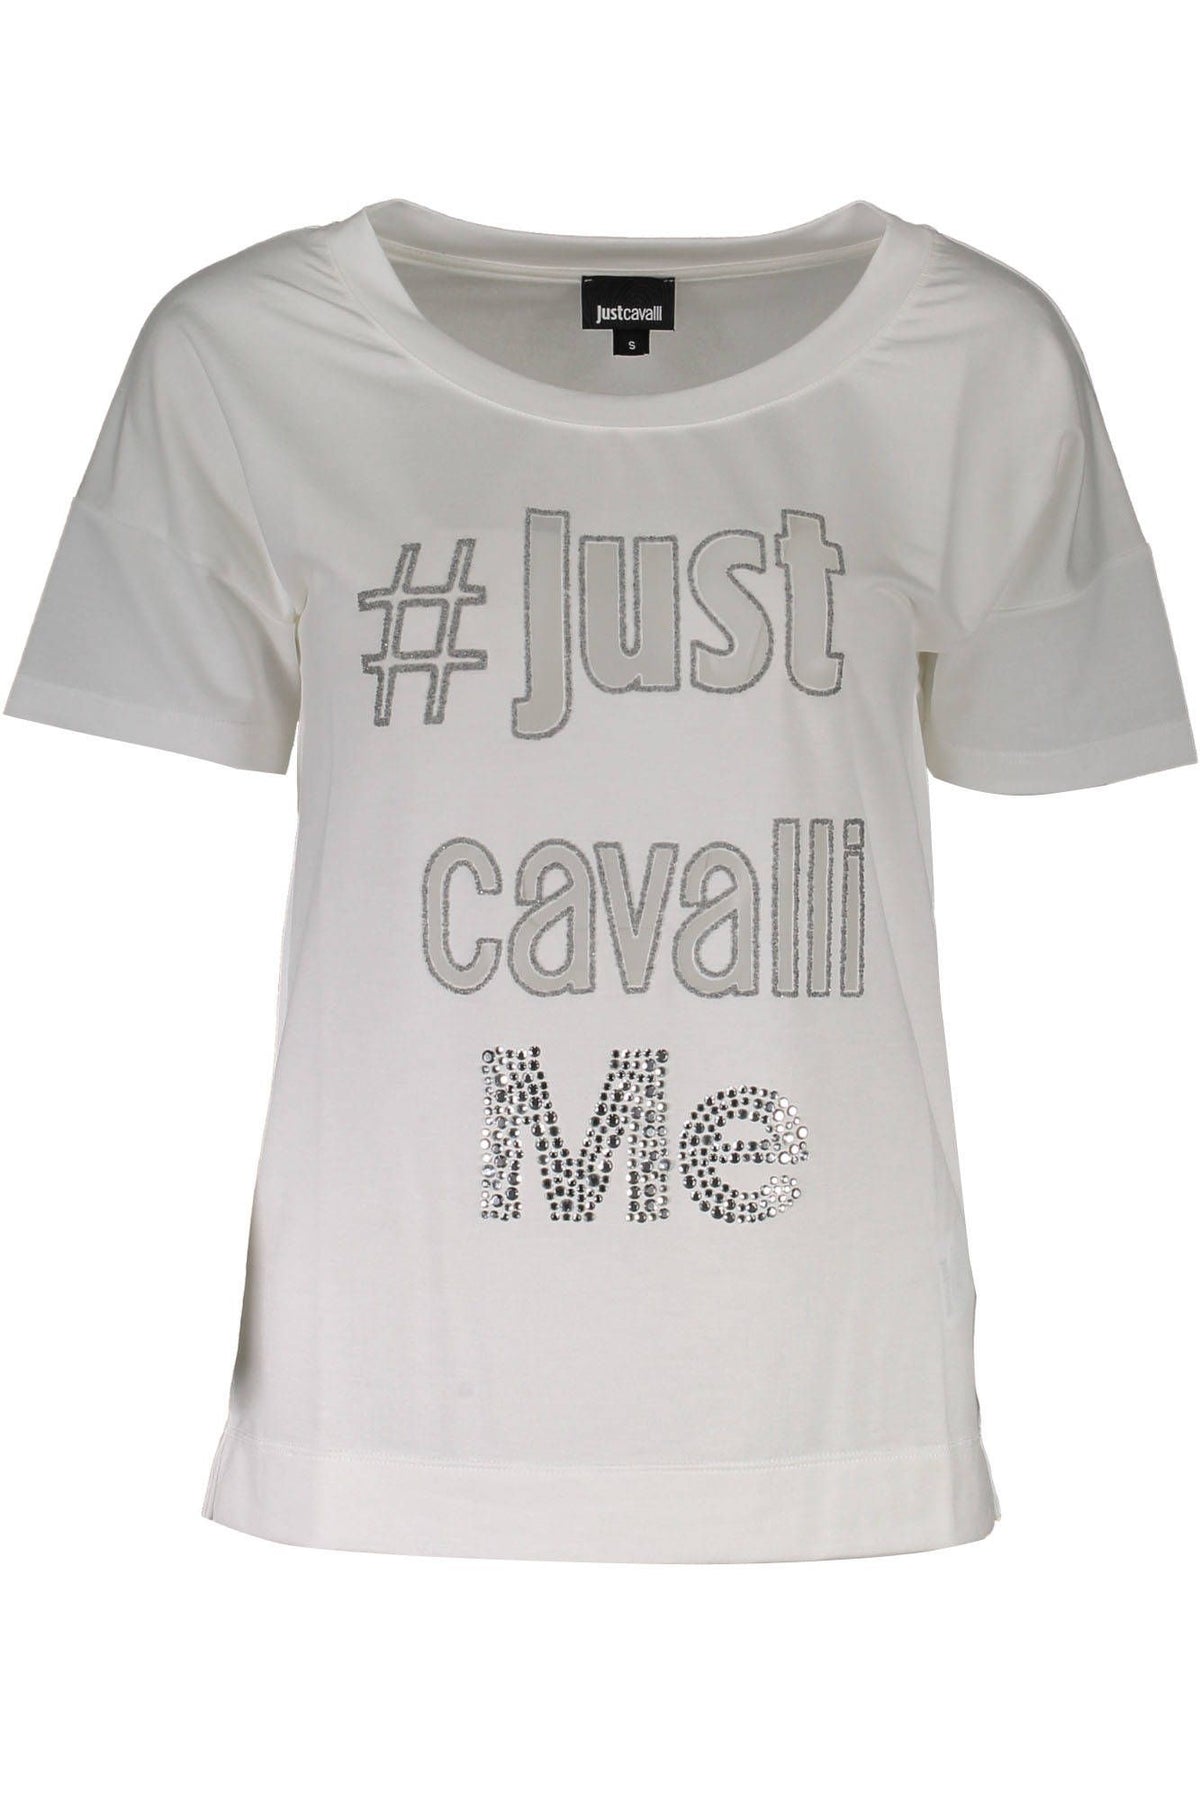 Just Cavalli Damen T-Shirt Sweatshirt mit Rundhalsausschnitt, kurzarm